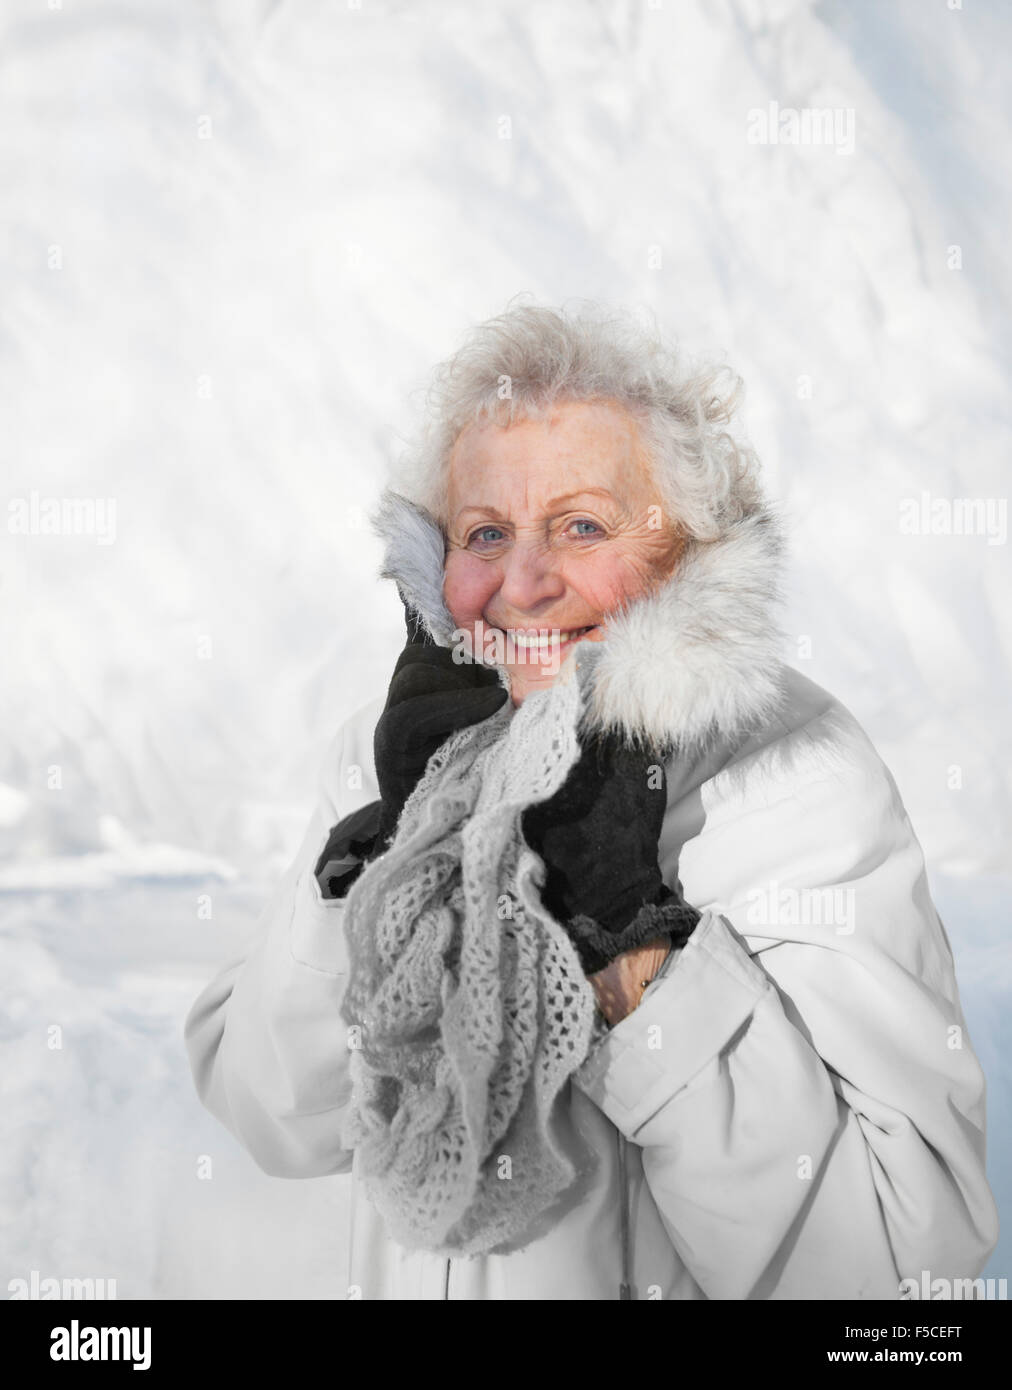 Senior sonriente mujer caucásica de pie en la nieve snuggles hasta su peludo cuello y bufanda de lana en un frío día de invierno, MN, EE.UU. Foto de stock